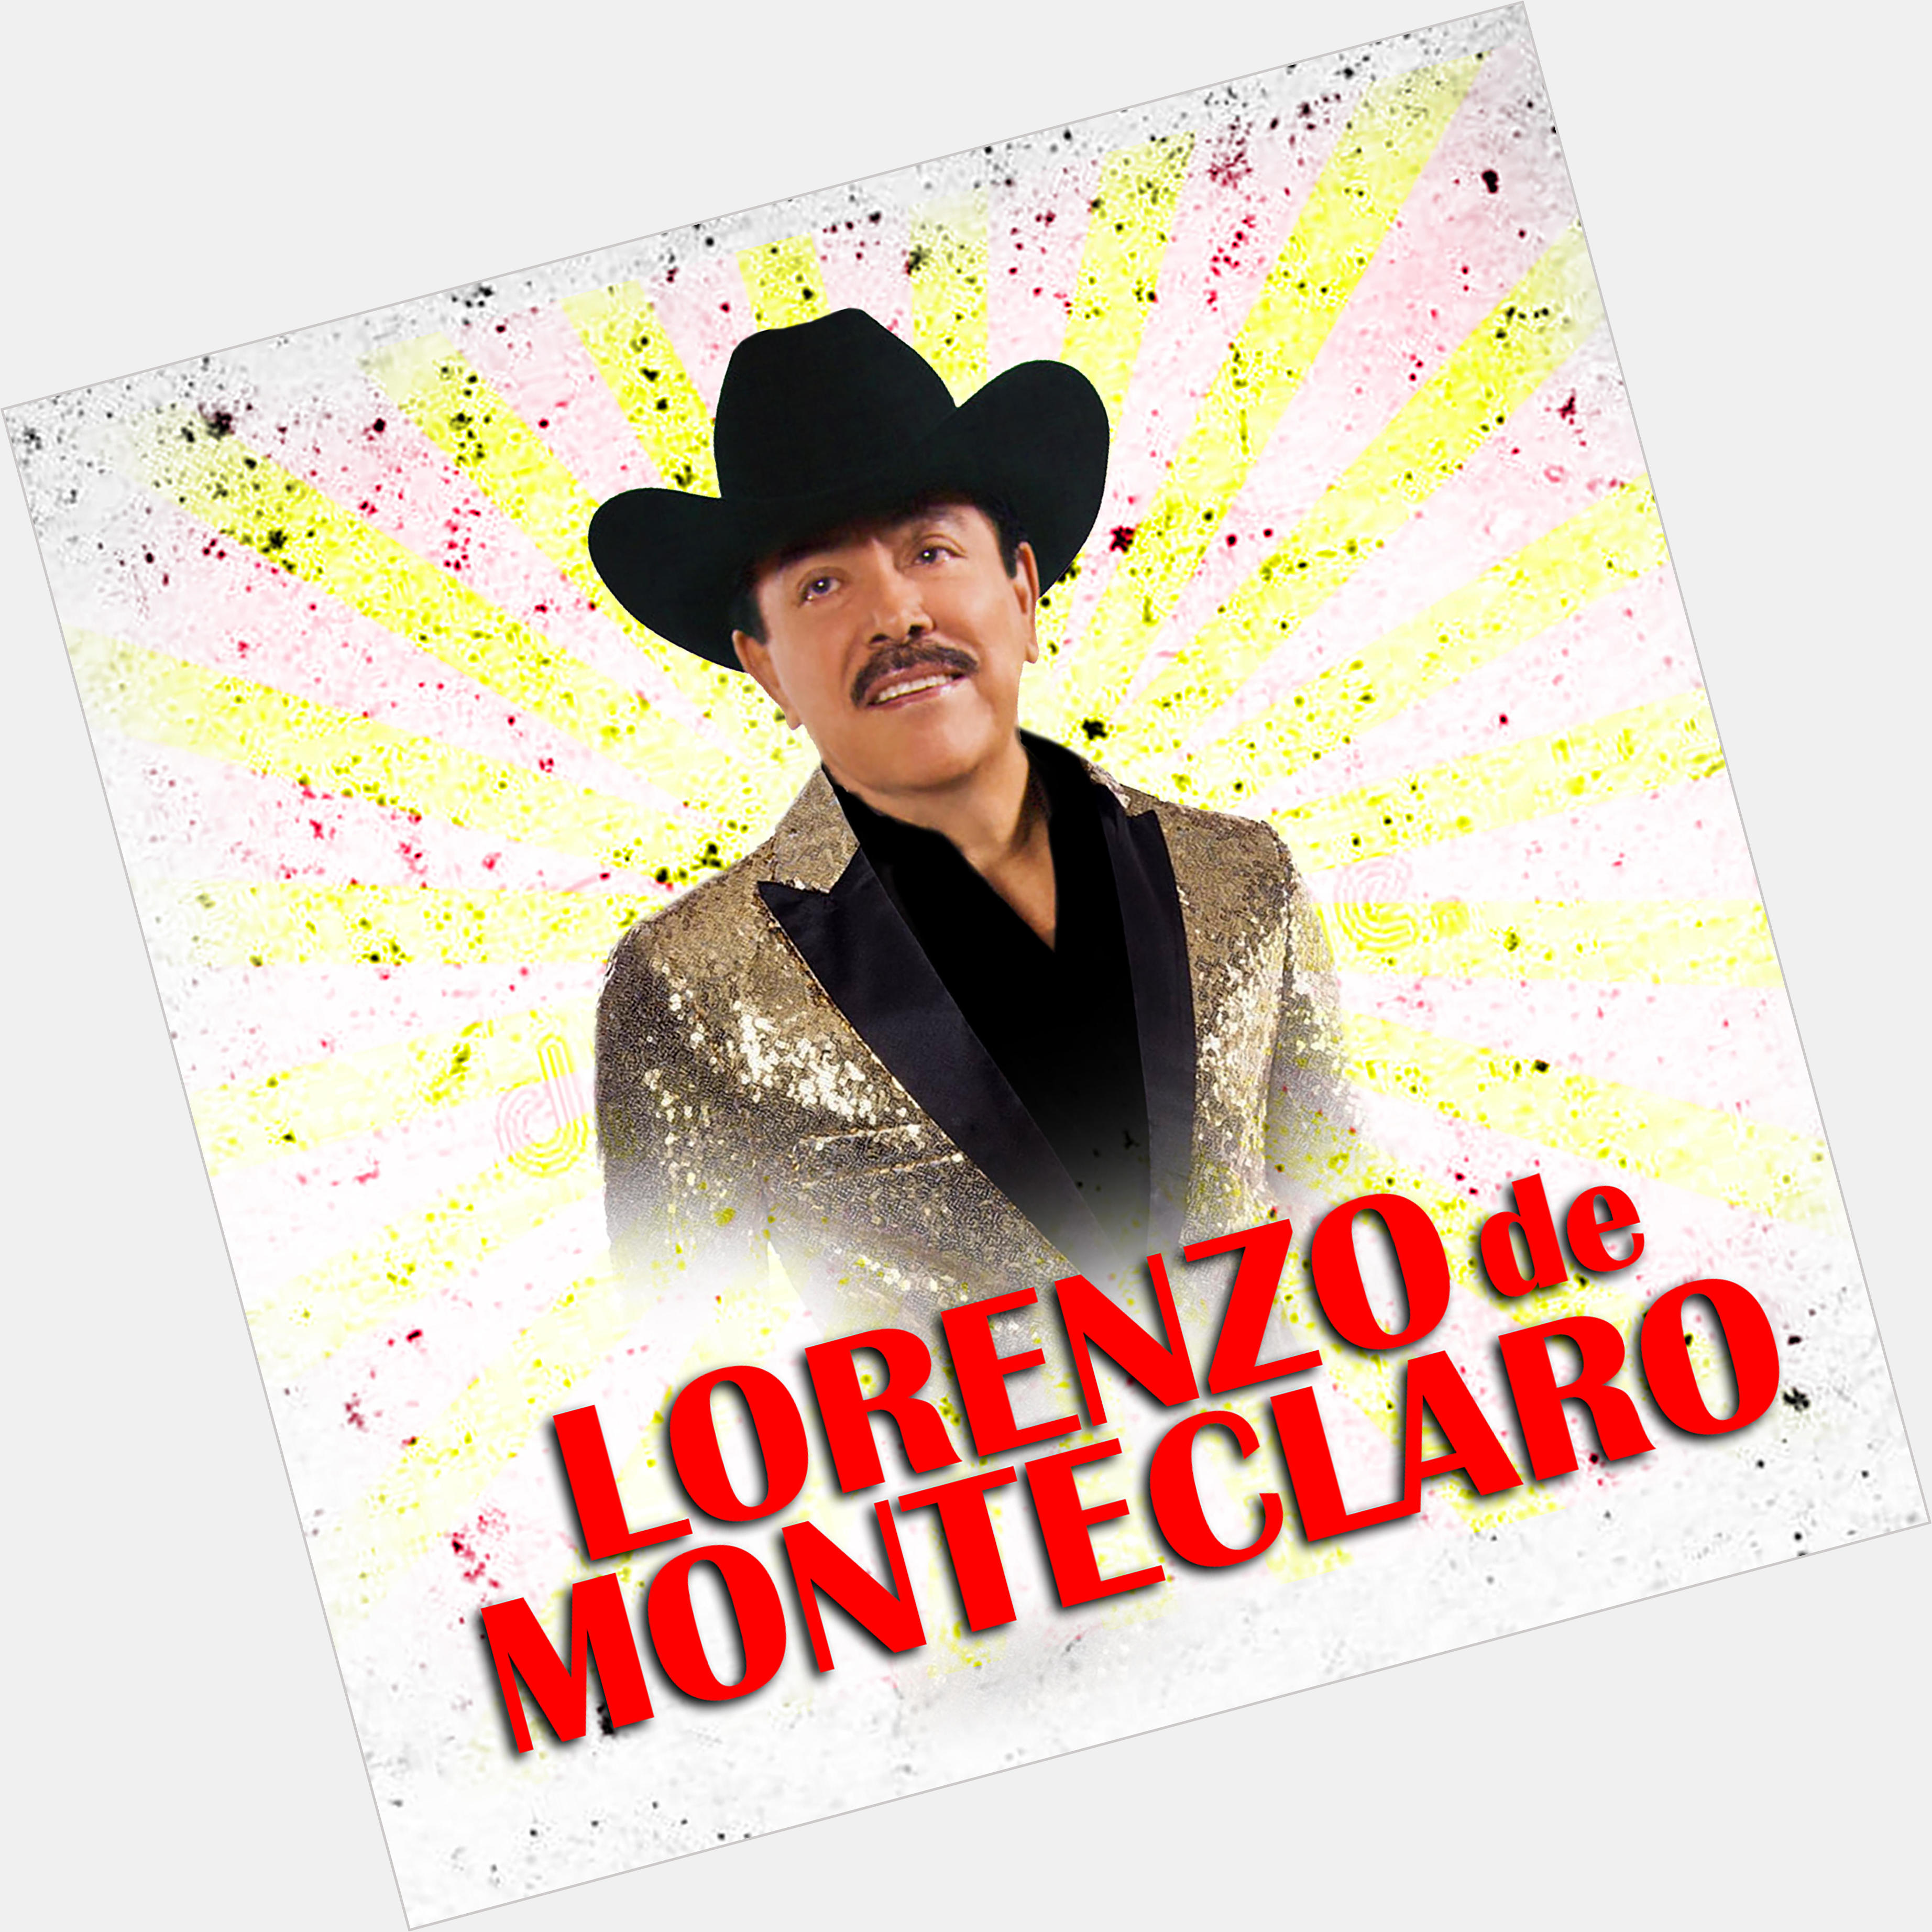 <a href="/hot-men/lorenzo-de-monteclaro/where-dating-news-photos">Lorenzo De Monteclaro</a>  